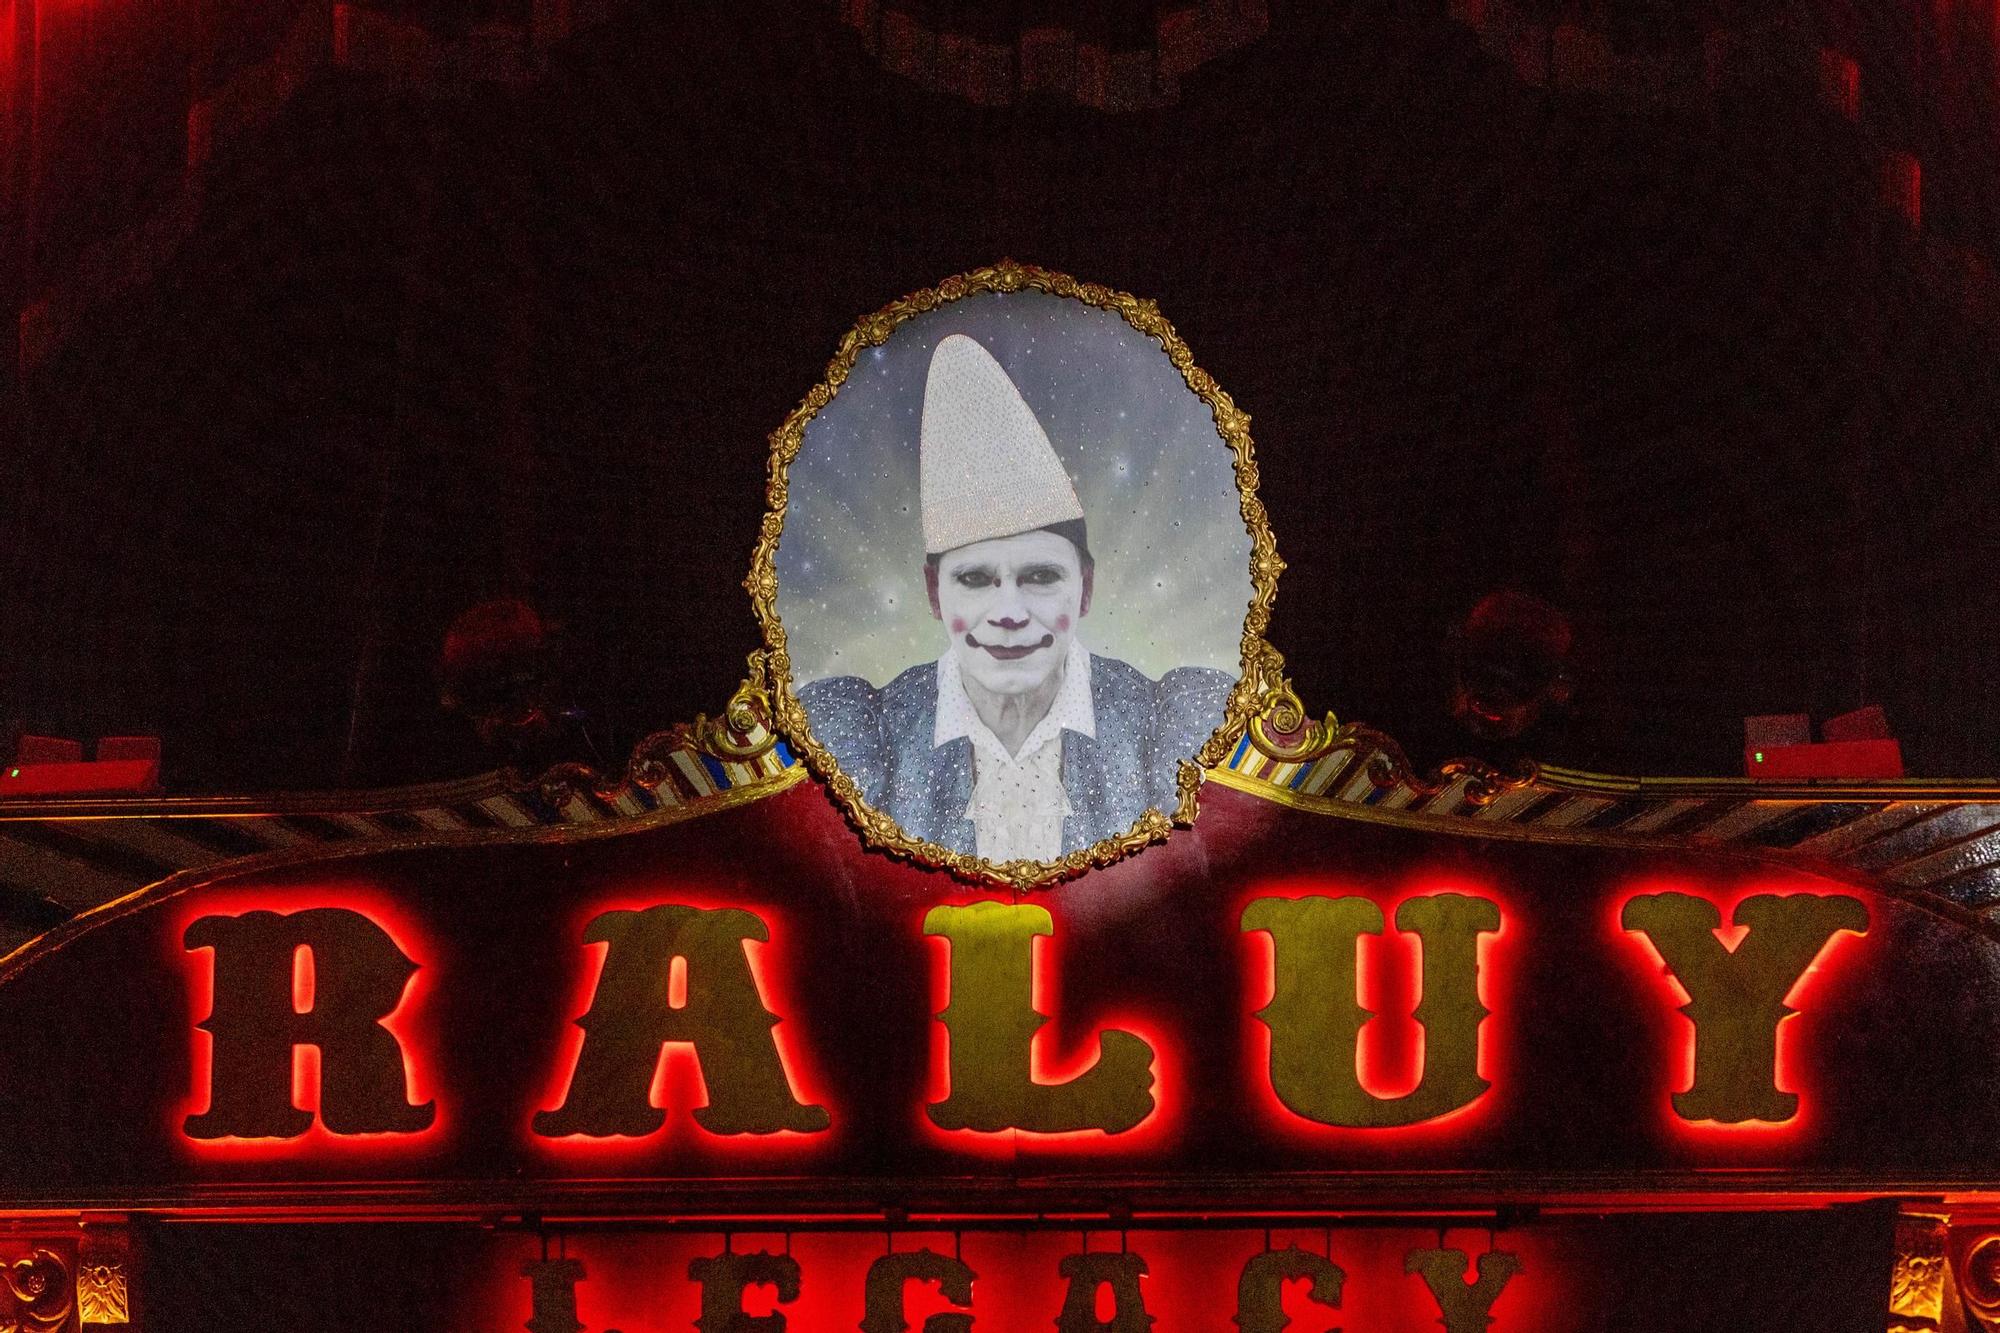 El Circo Raluy Legacy deslumbra en Alicante